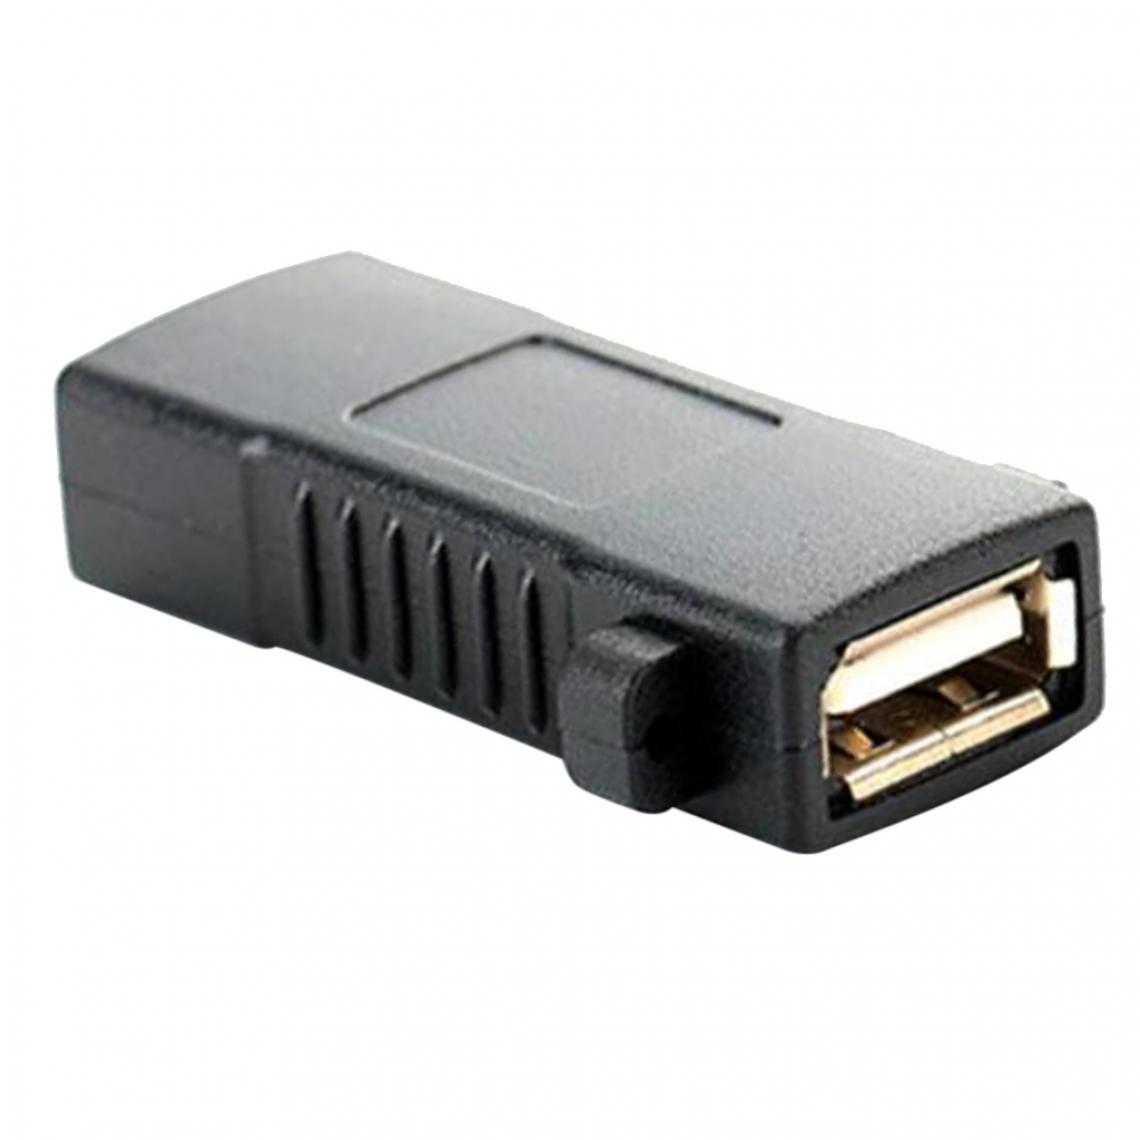 marque generique - Connecteur USB Femelle à Femelle / Connecteur De Câble D'extension USB 2.0 Connecteur Super Rapide - Noir - Hub